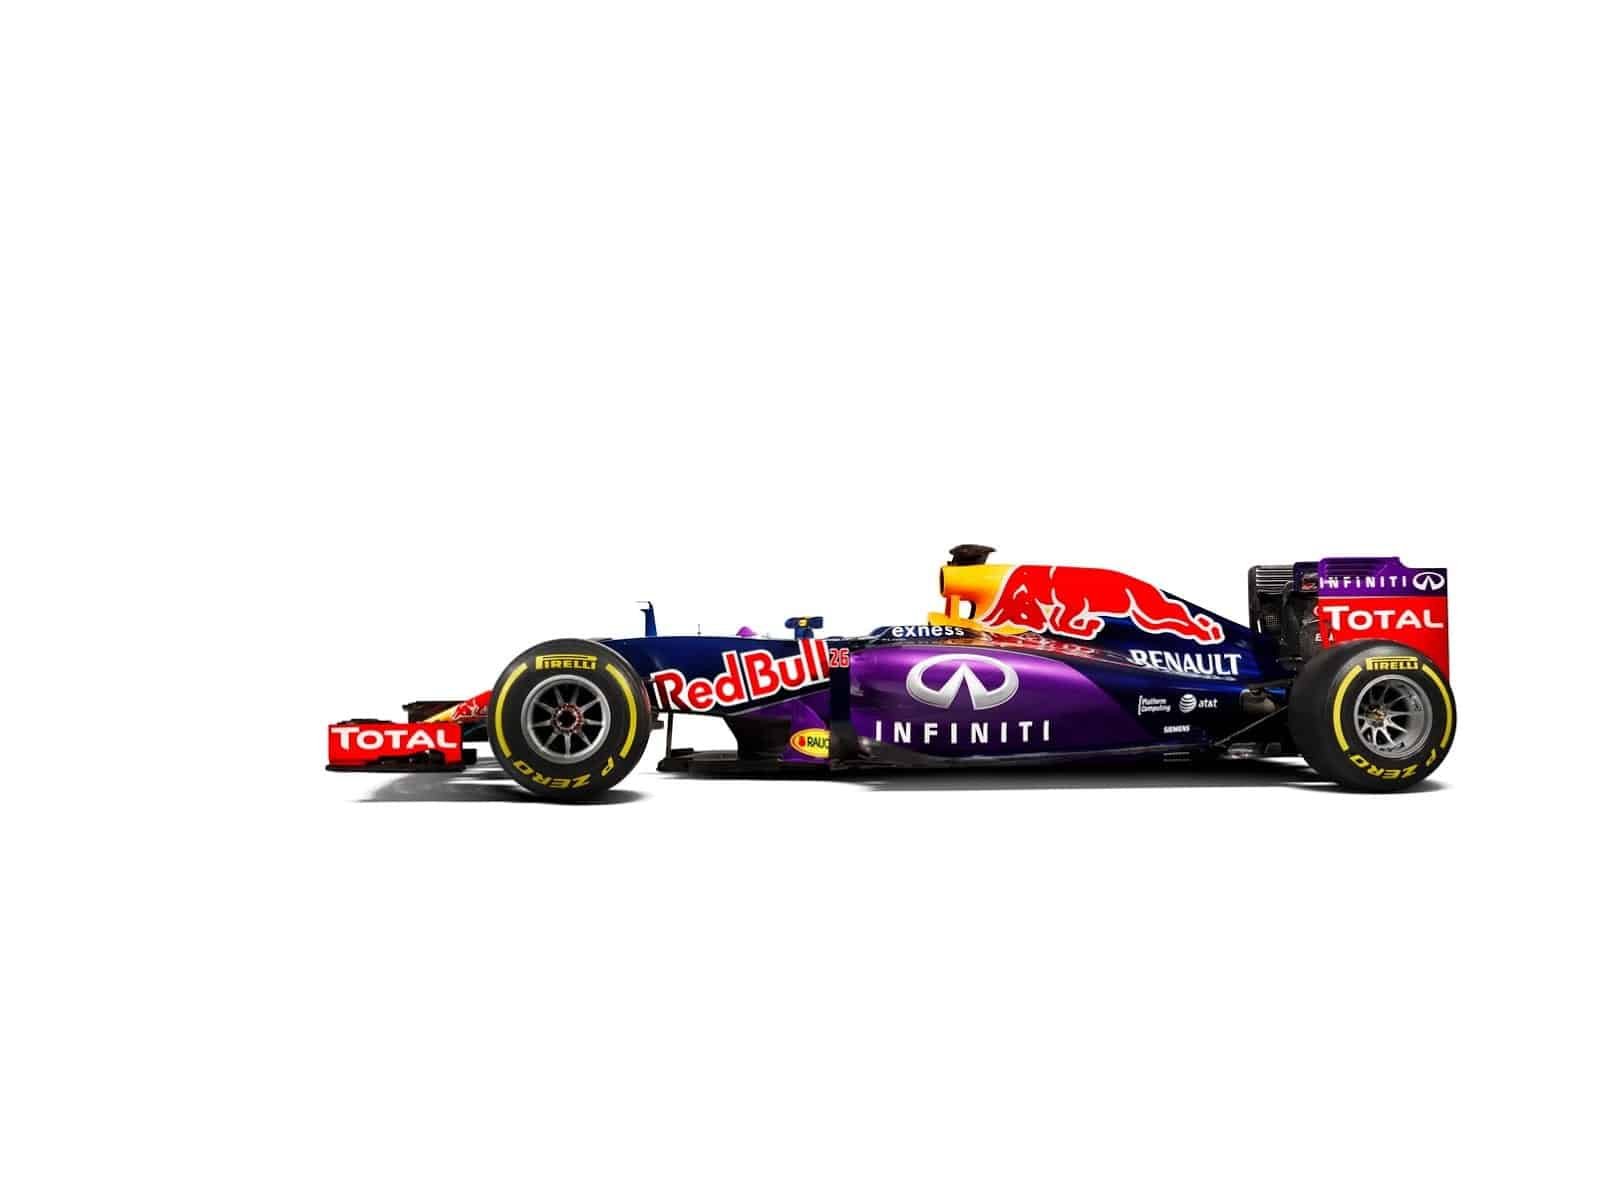 La Red Bull RB11 encore plus violette!